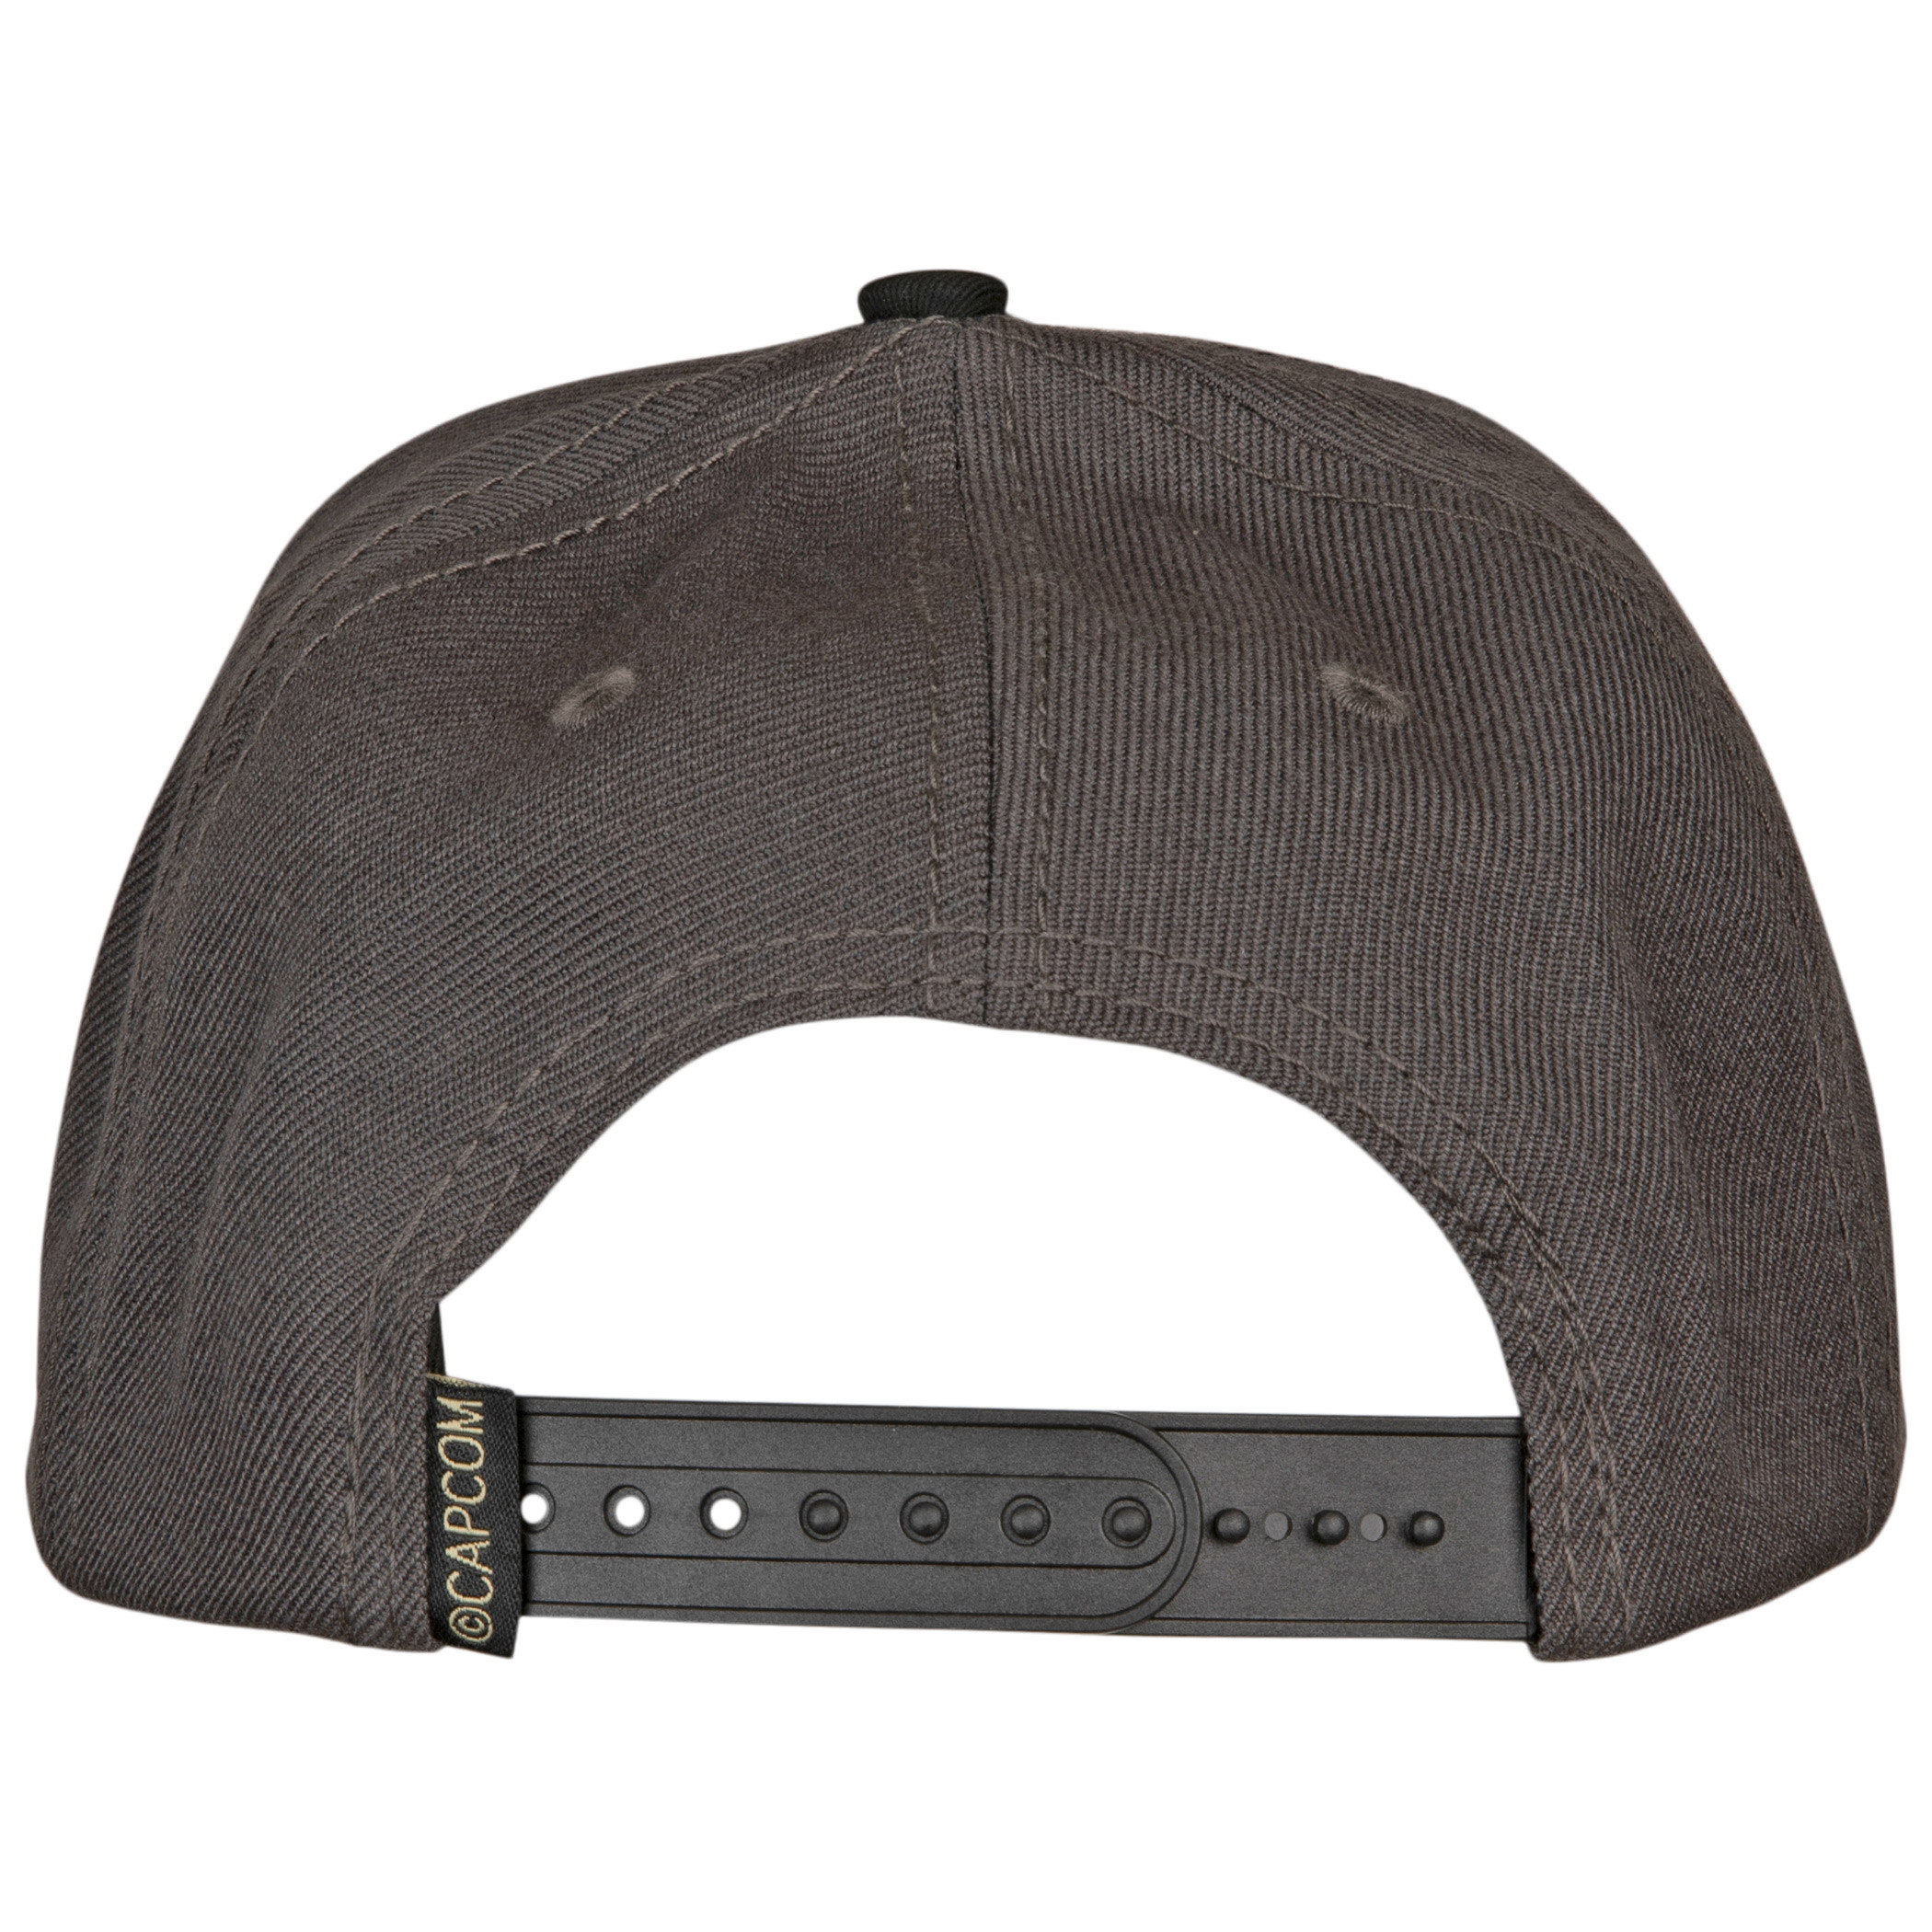 Resident Evil Symbol Patch Adjustable Snapback Hat